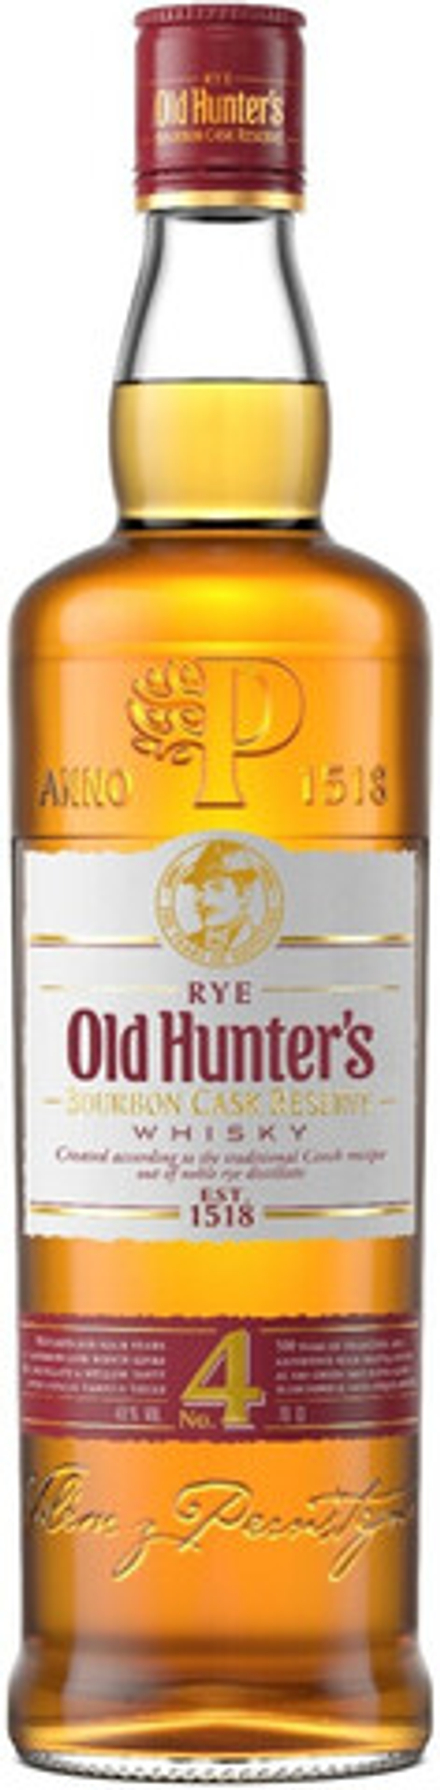 Виски Old Hunter's Bourbon Cask Reserve, 0.7 л.